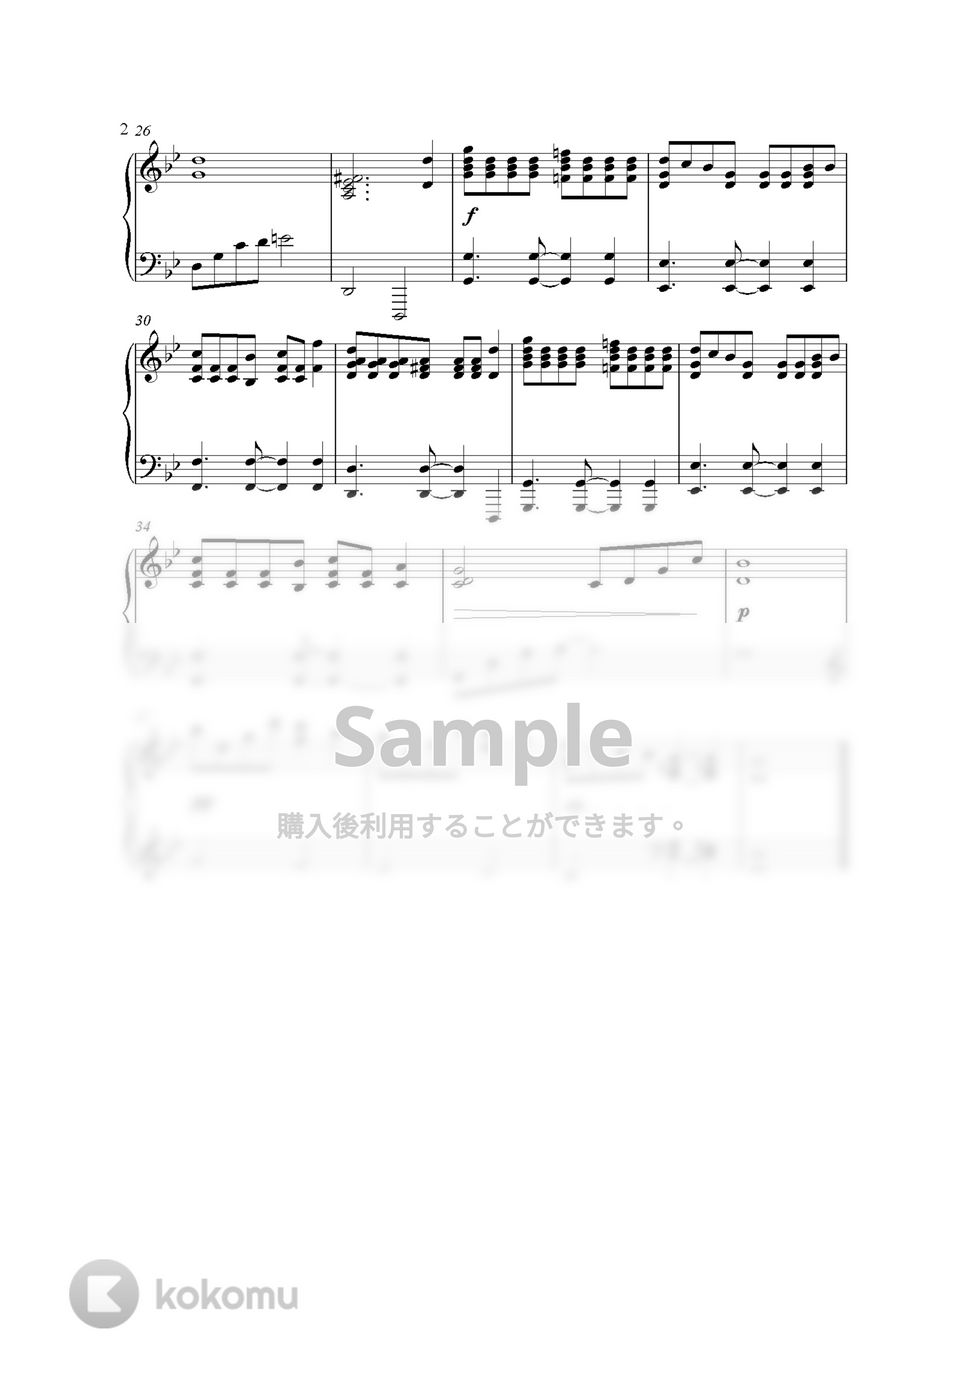 天空の城ラピュタ - 君をのせて (Piano Version) by GoGoPiano